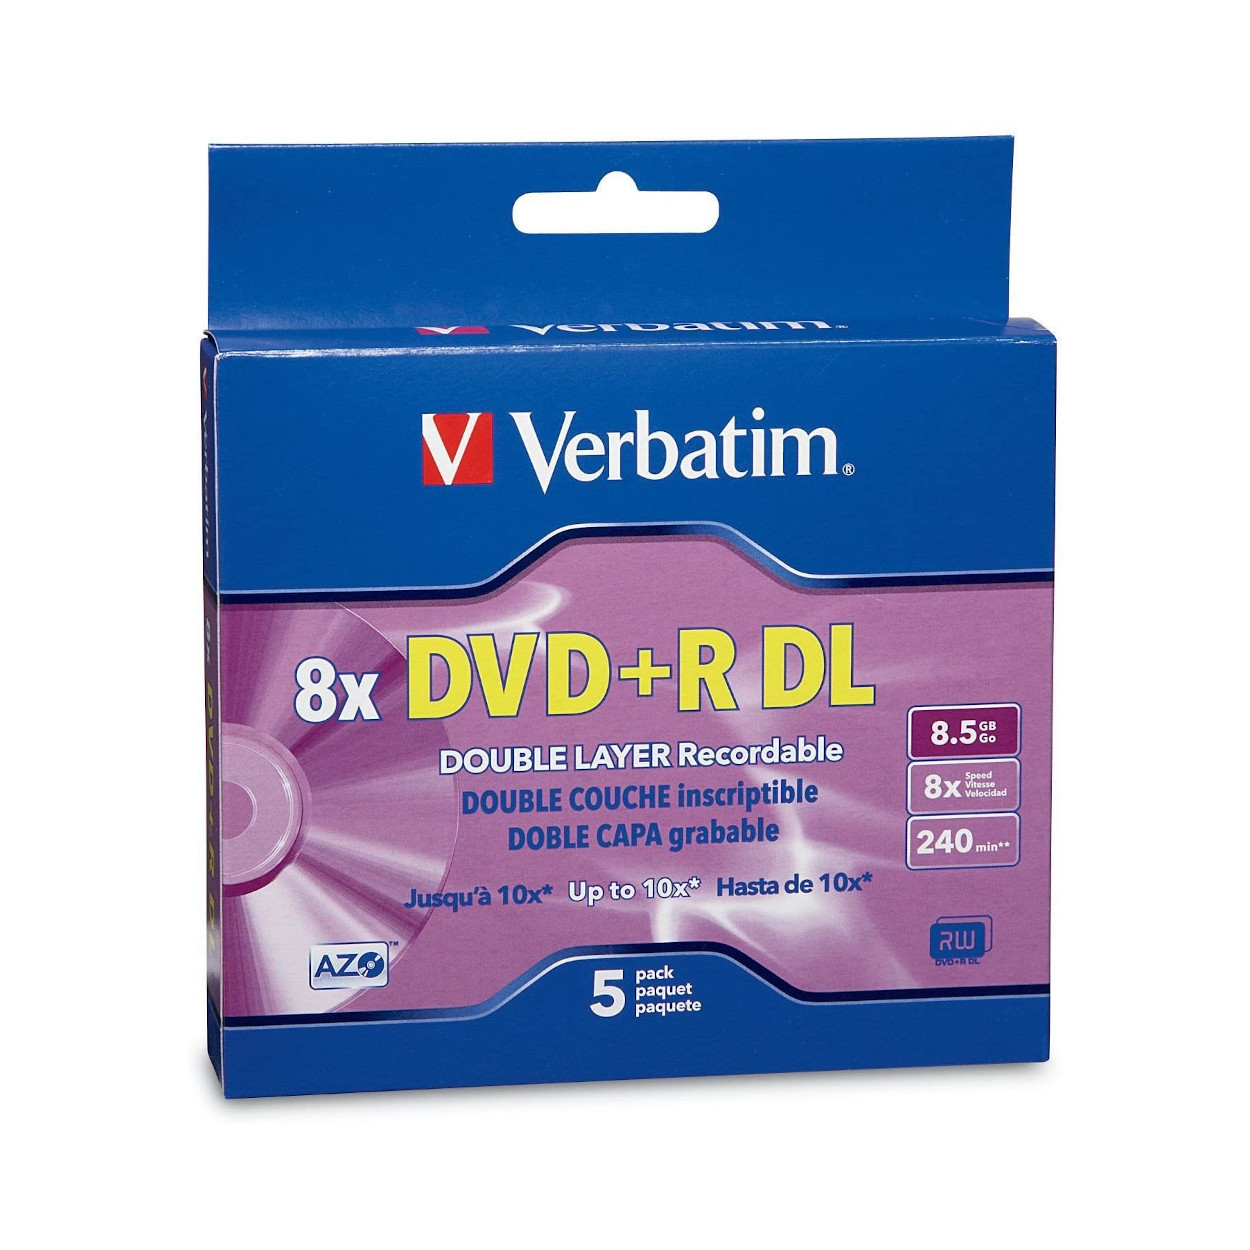 Verbatim 95311 DVD+R DL 8.5GB/8x Dual Layer Disc in Jewel Case - 5 Pack